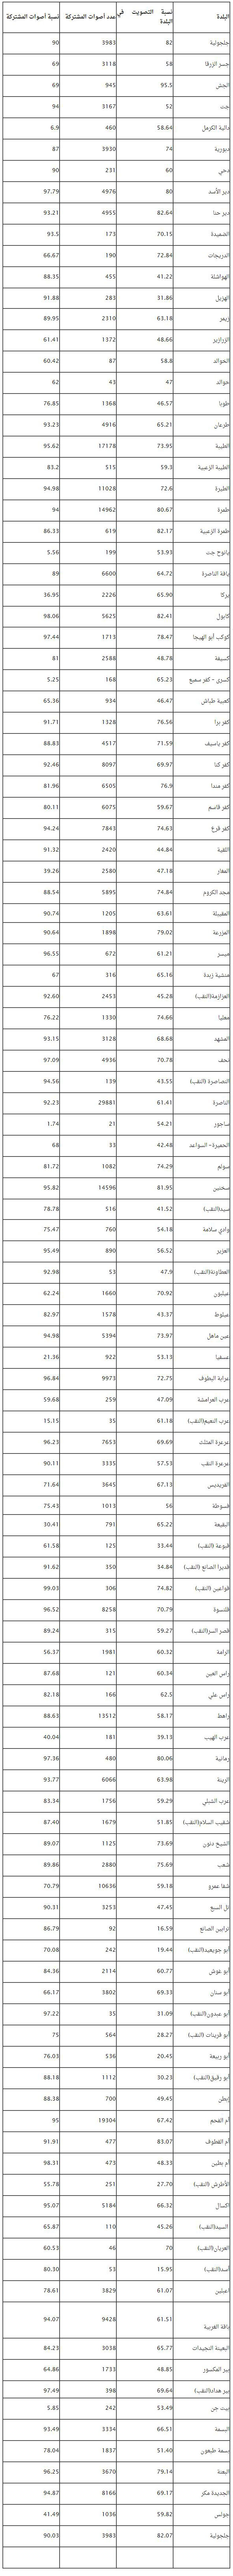 نتائج القائمة المشتركة في البلدات العربية